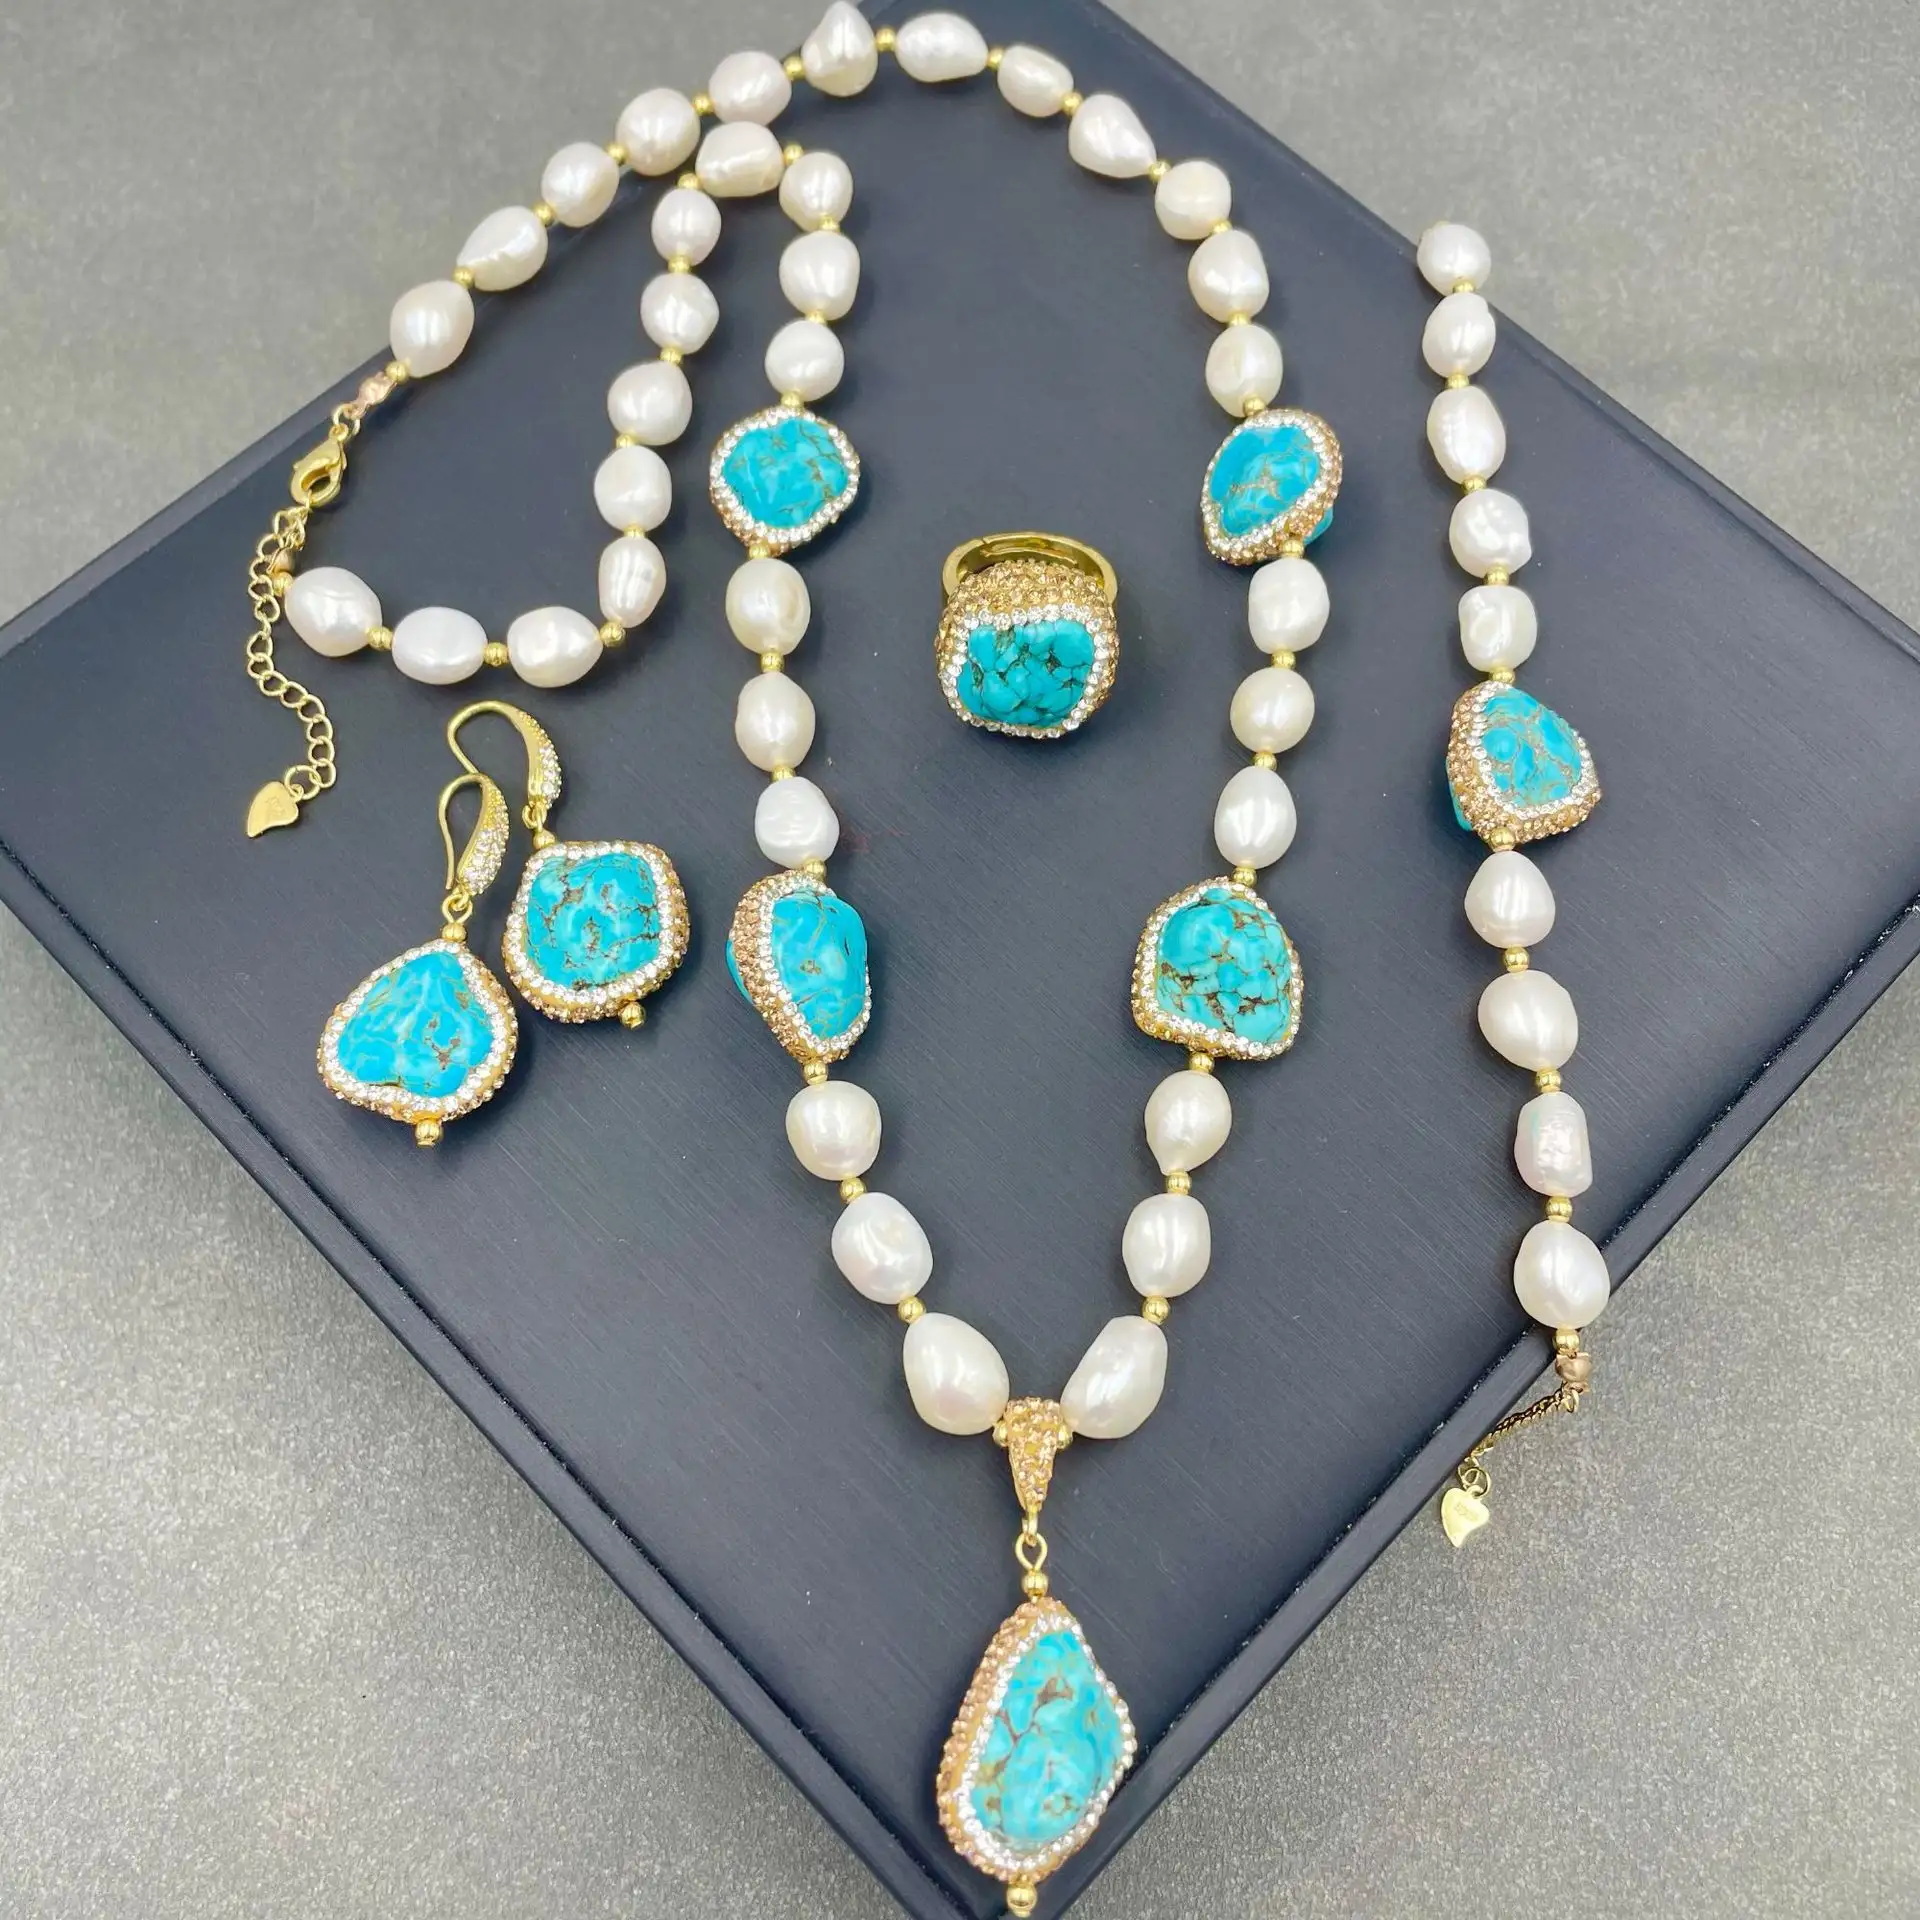 Último hecho a mano con incrustaciones de diamantes checos de cuatro piezas 18K chapado en oro caro perla de agua dulce turquesa conjunto de joyería nupcial